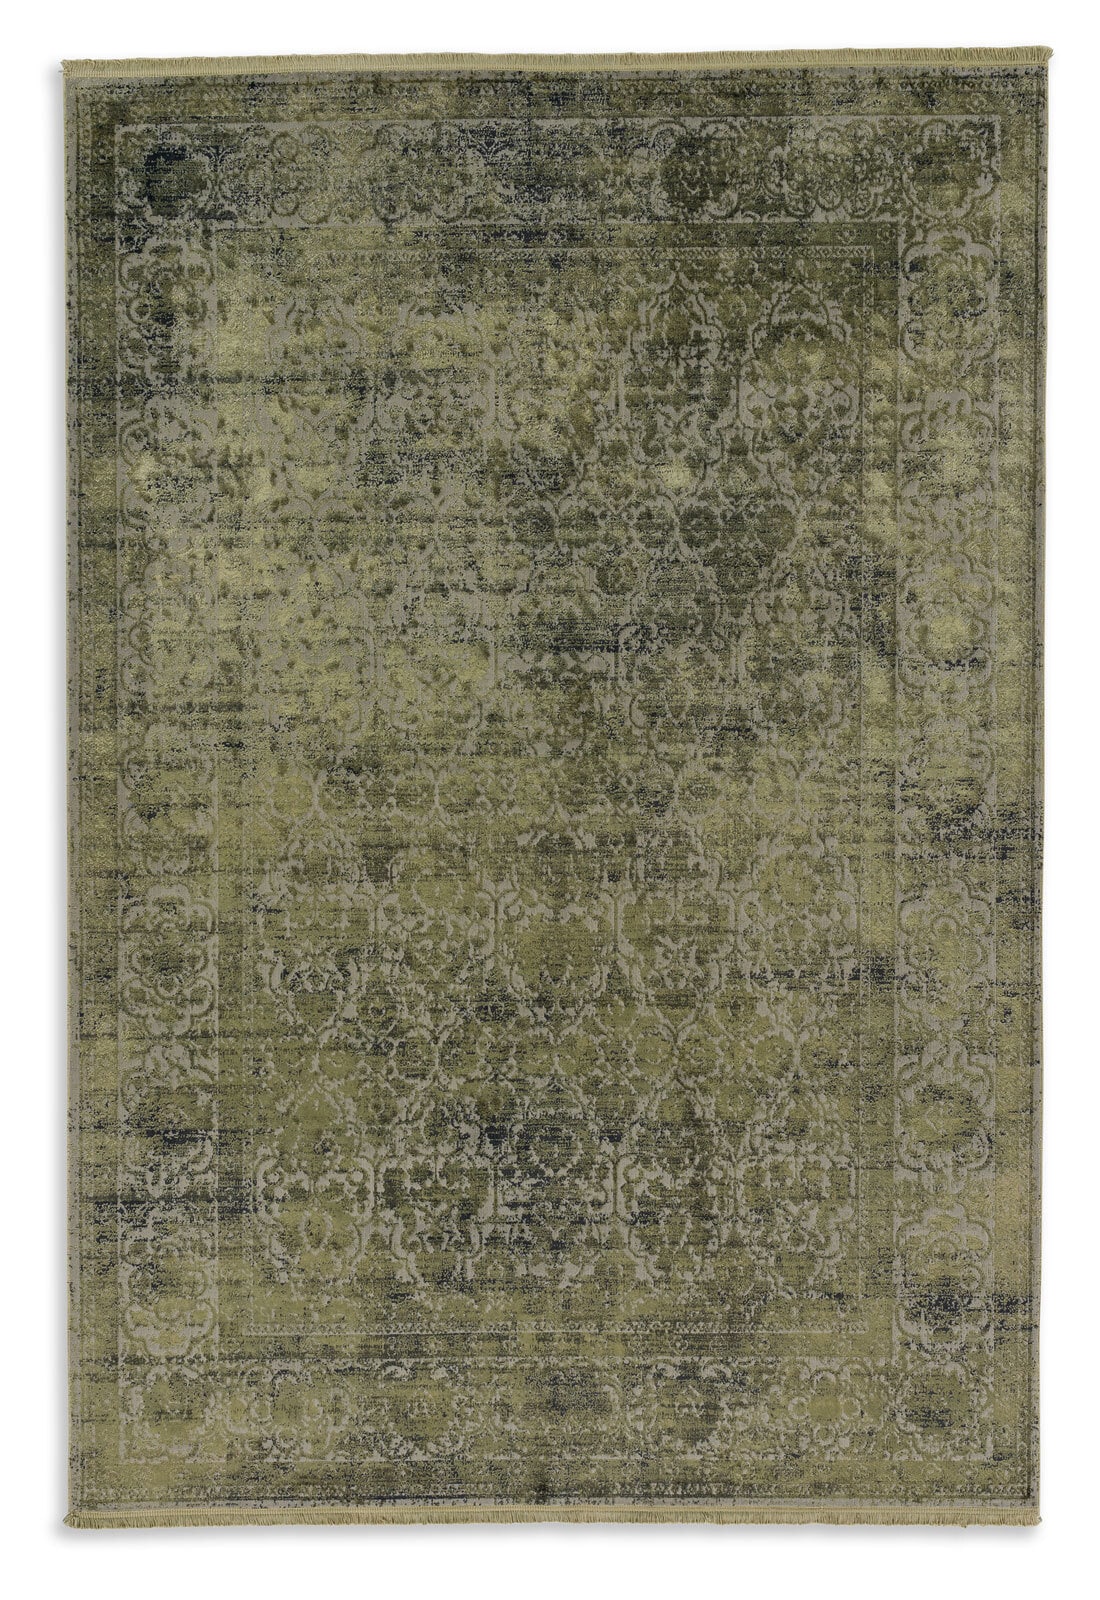 SCHÖNER WOHNEN-Kollektion Teppich VELVET 140 x 200 cm olivgrün